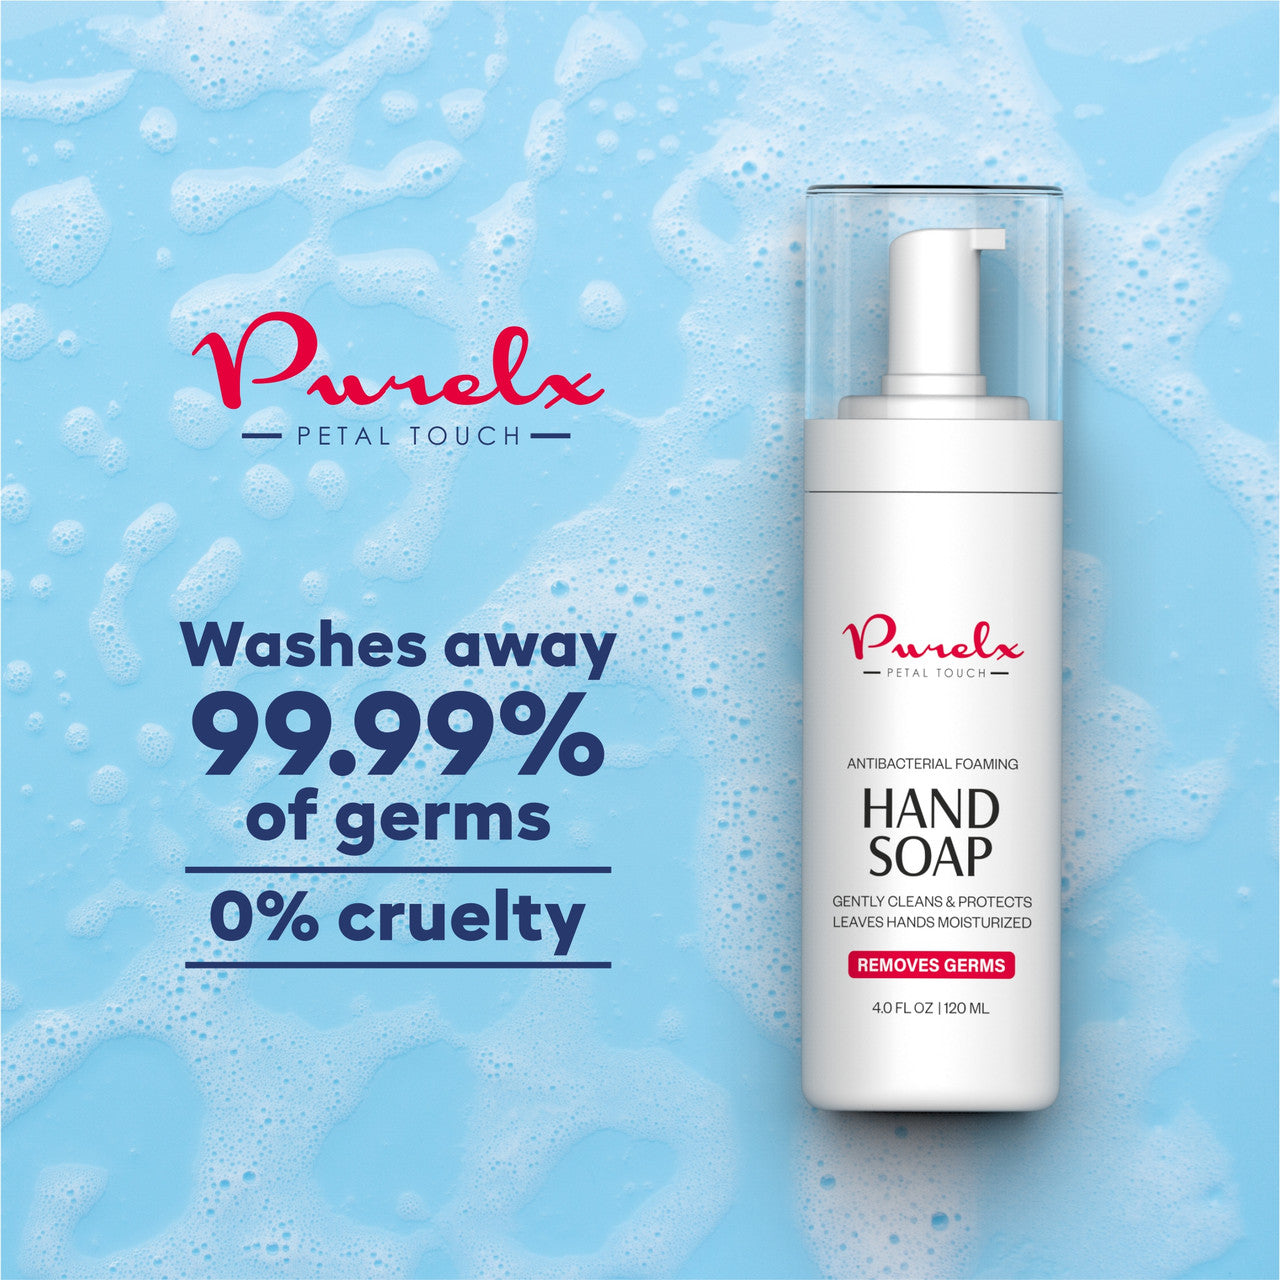 PureLx Antibacterial Foaming Hand Soap